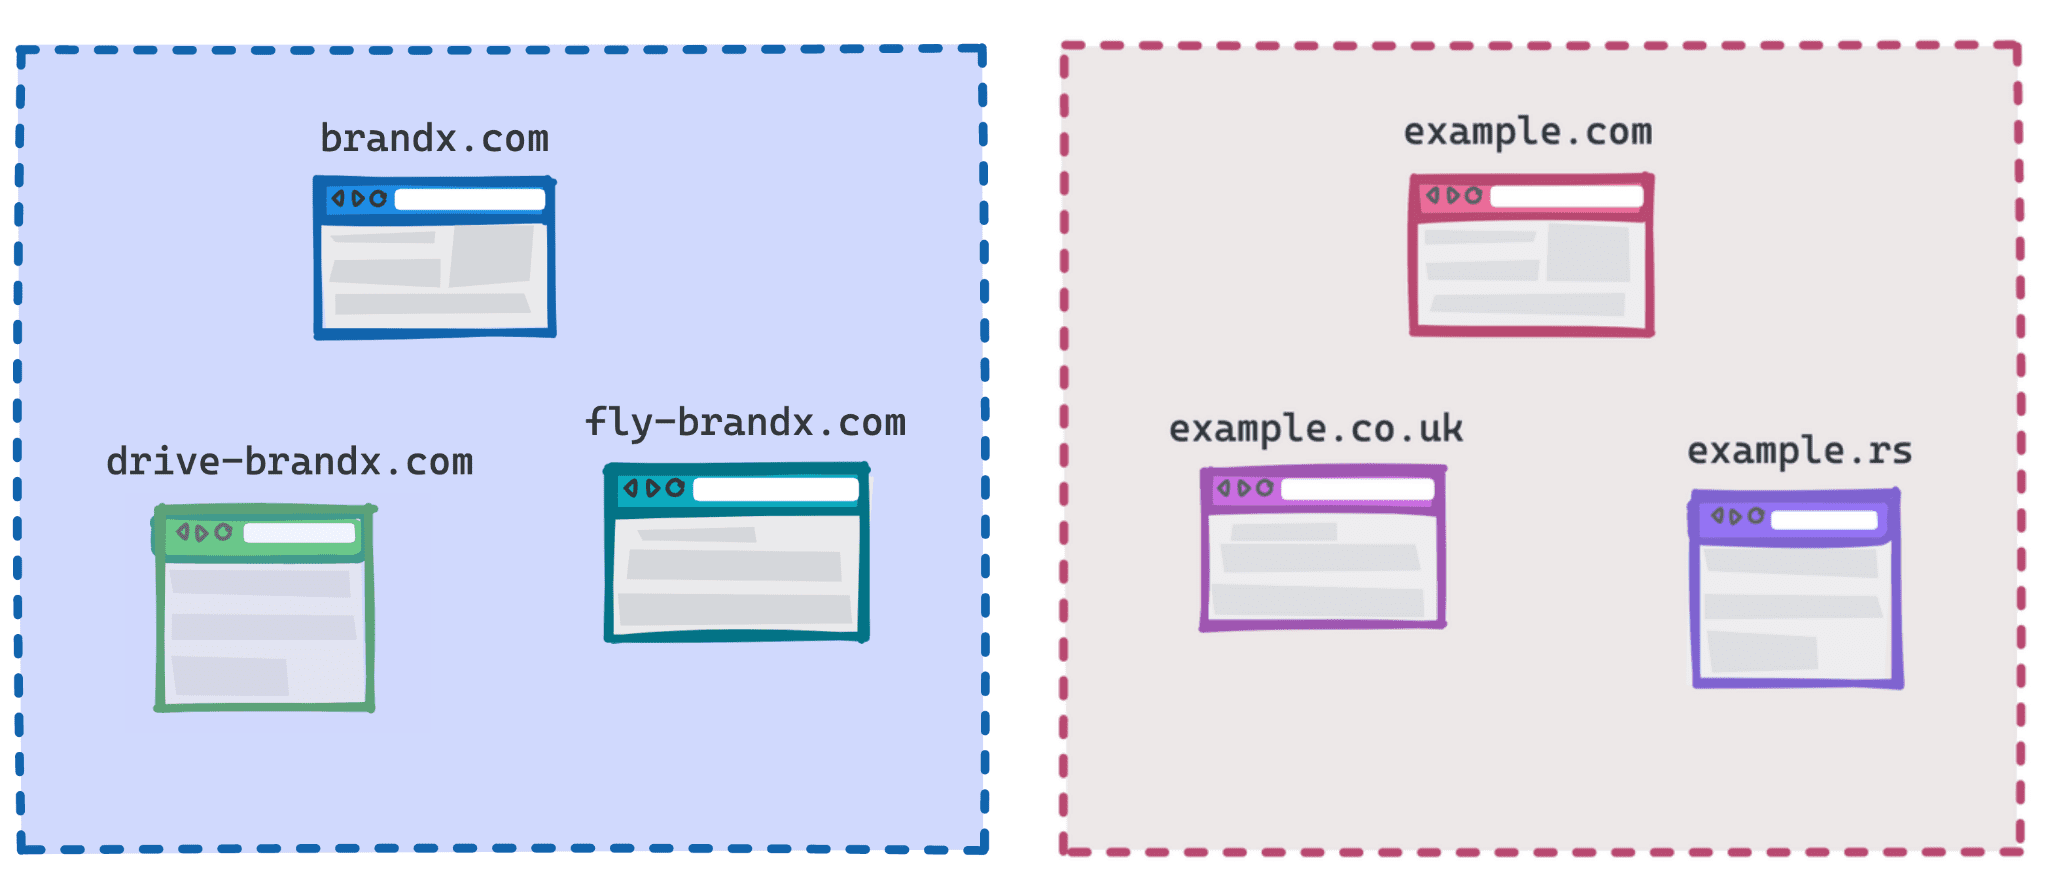 Bir grup olarak brandx.com, fly-brandx.com ve drive-brandx.com&#39;u, example.com, example.rs, example.co.uk&#39;yi ise başka bir grup olarak gösteren şema.